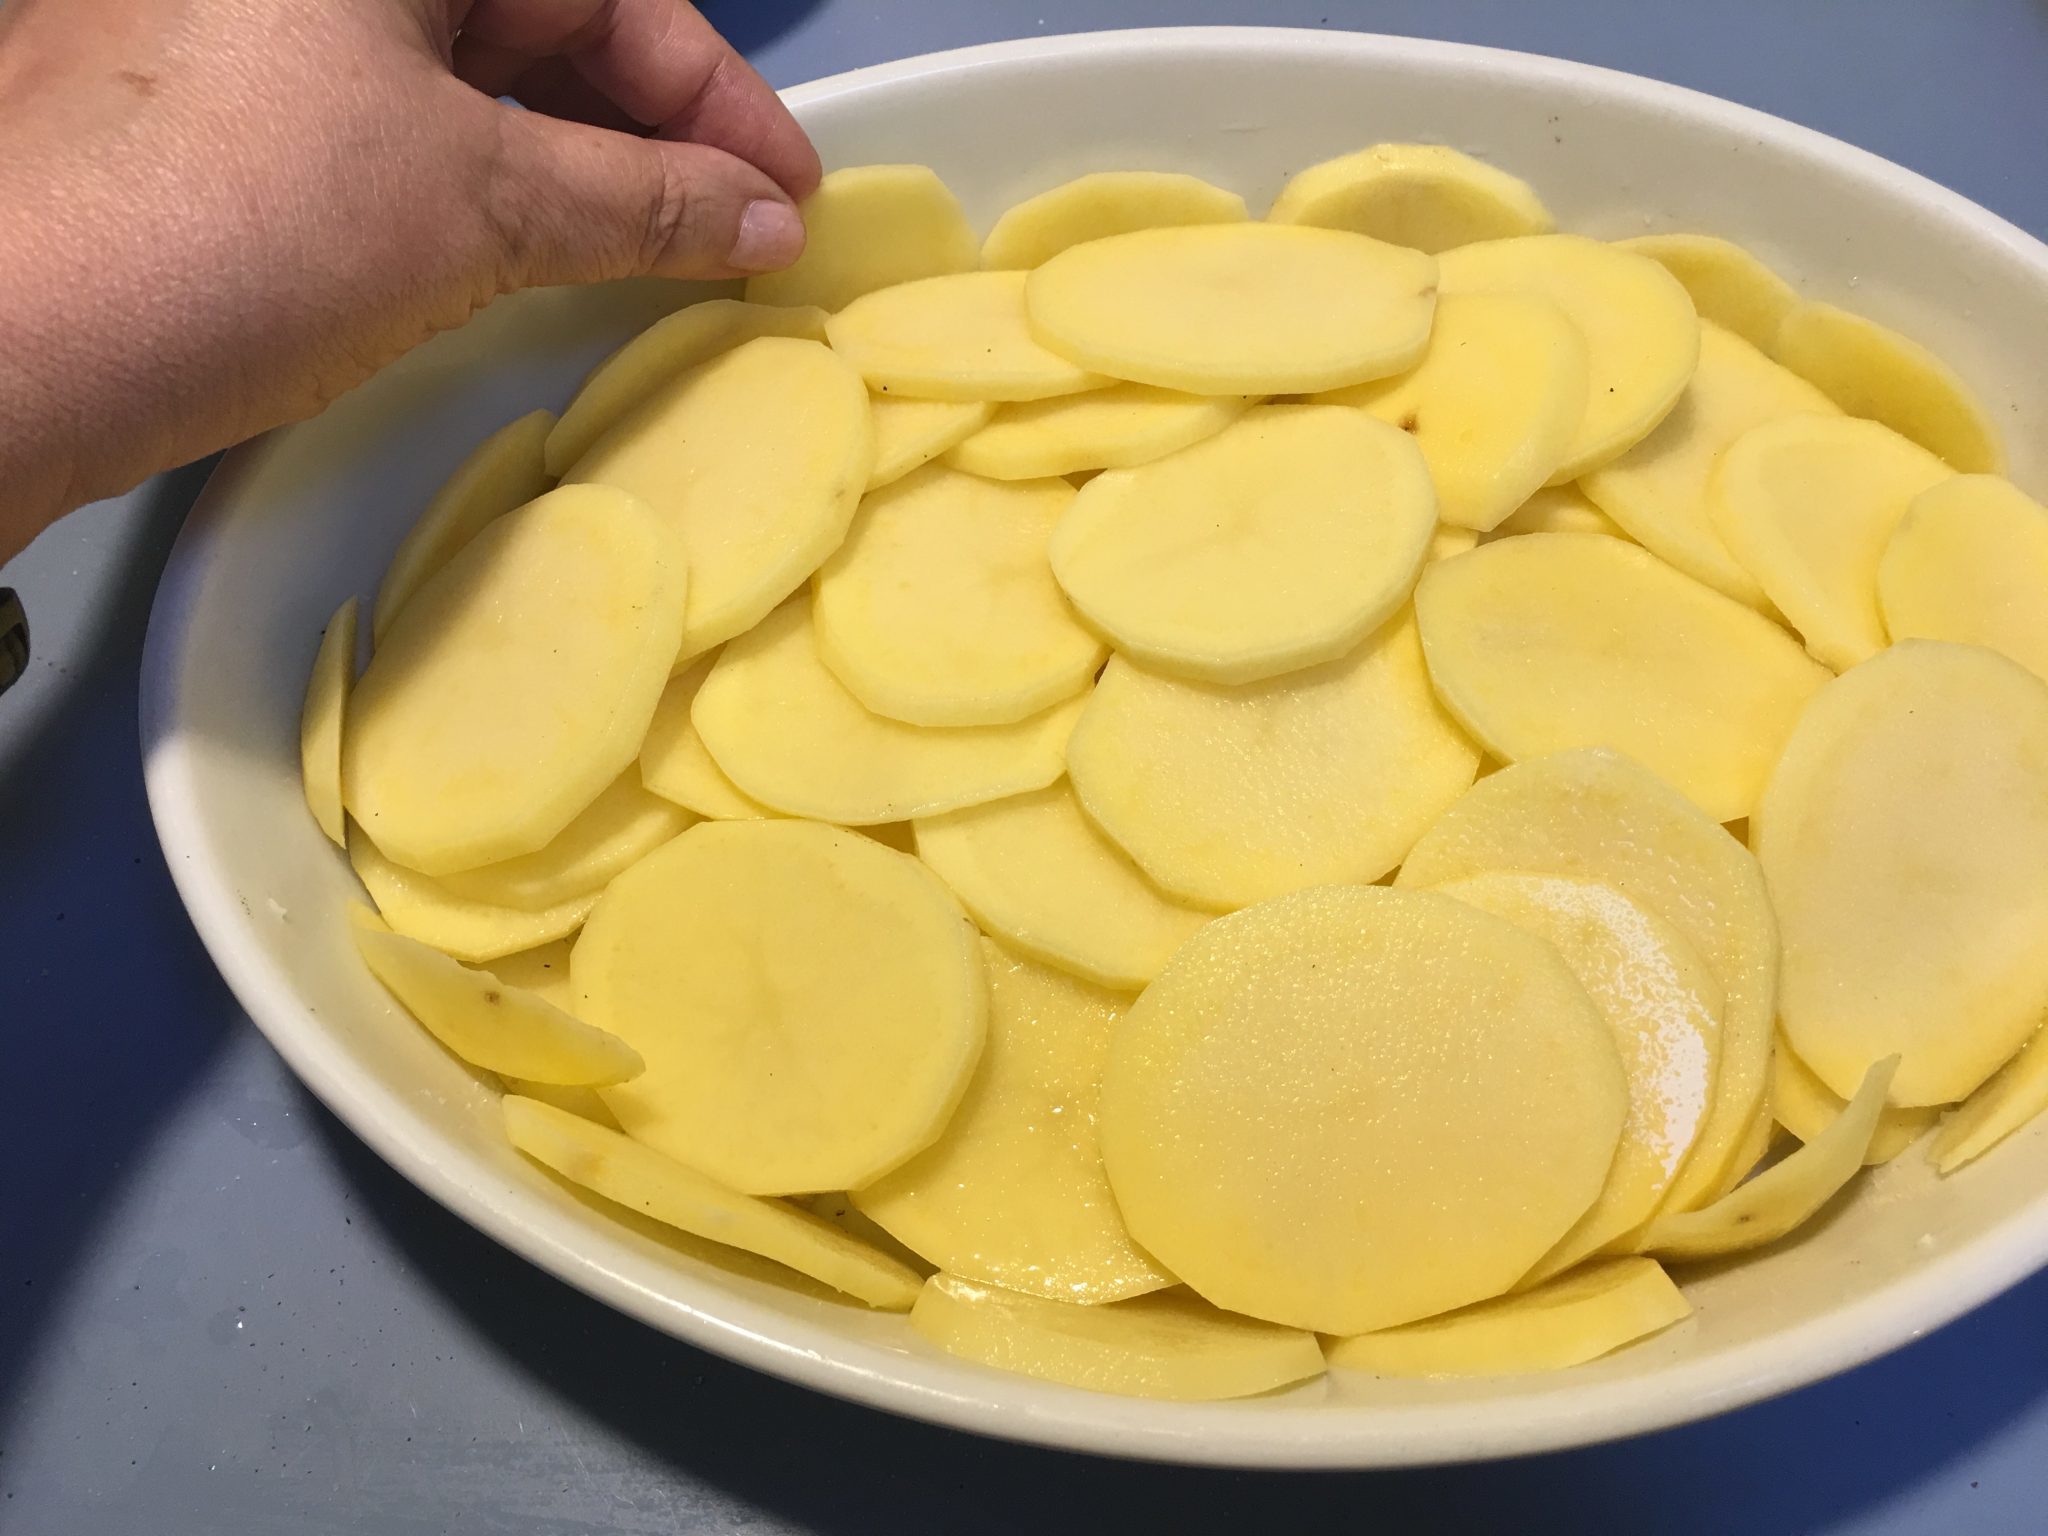 Patate affogate - pronte per andare in forno